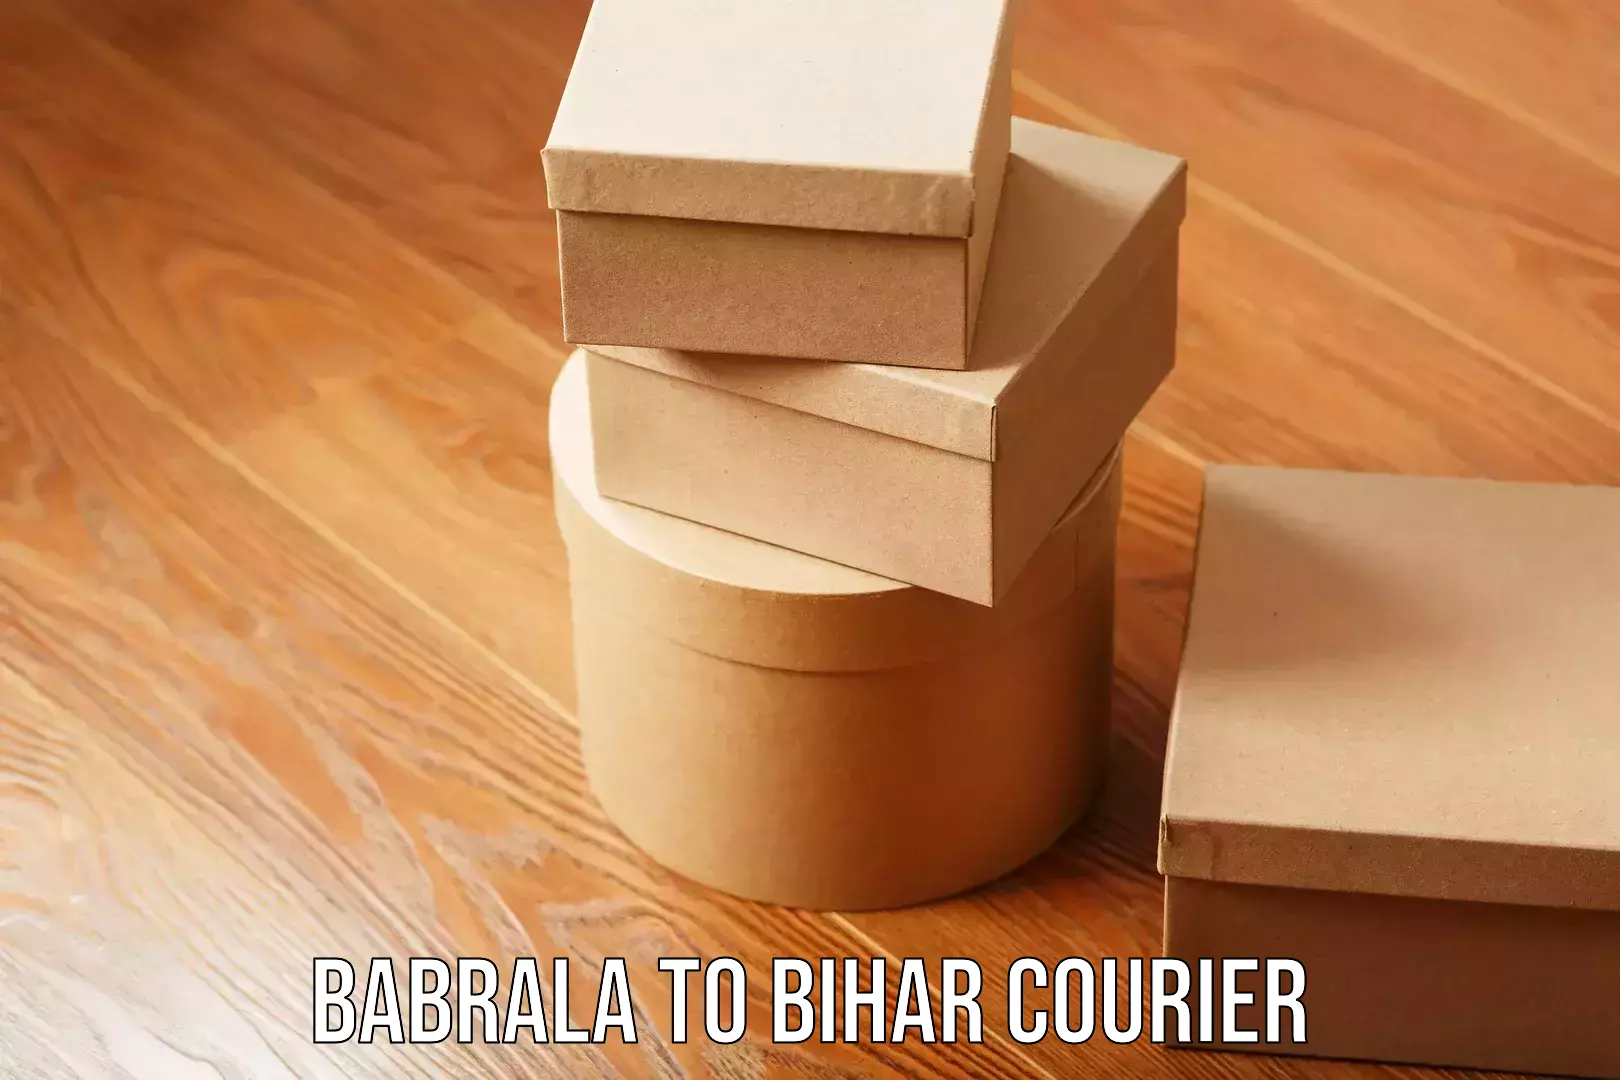 Courier service innovation Babrala to Malmaliya